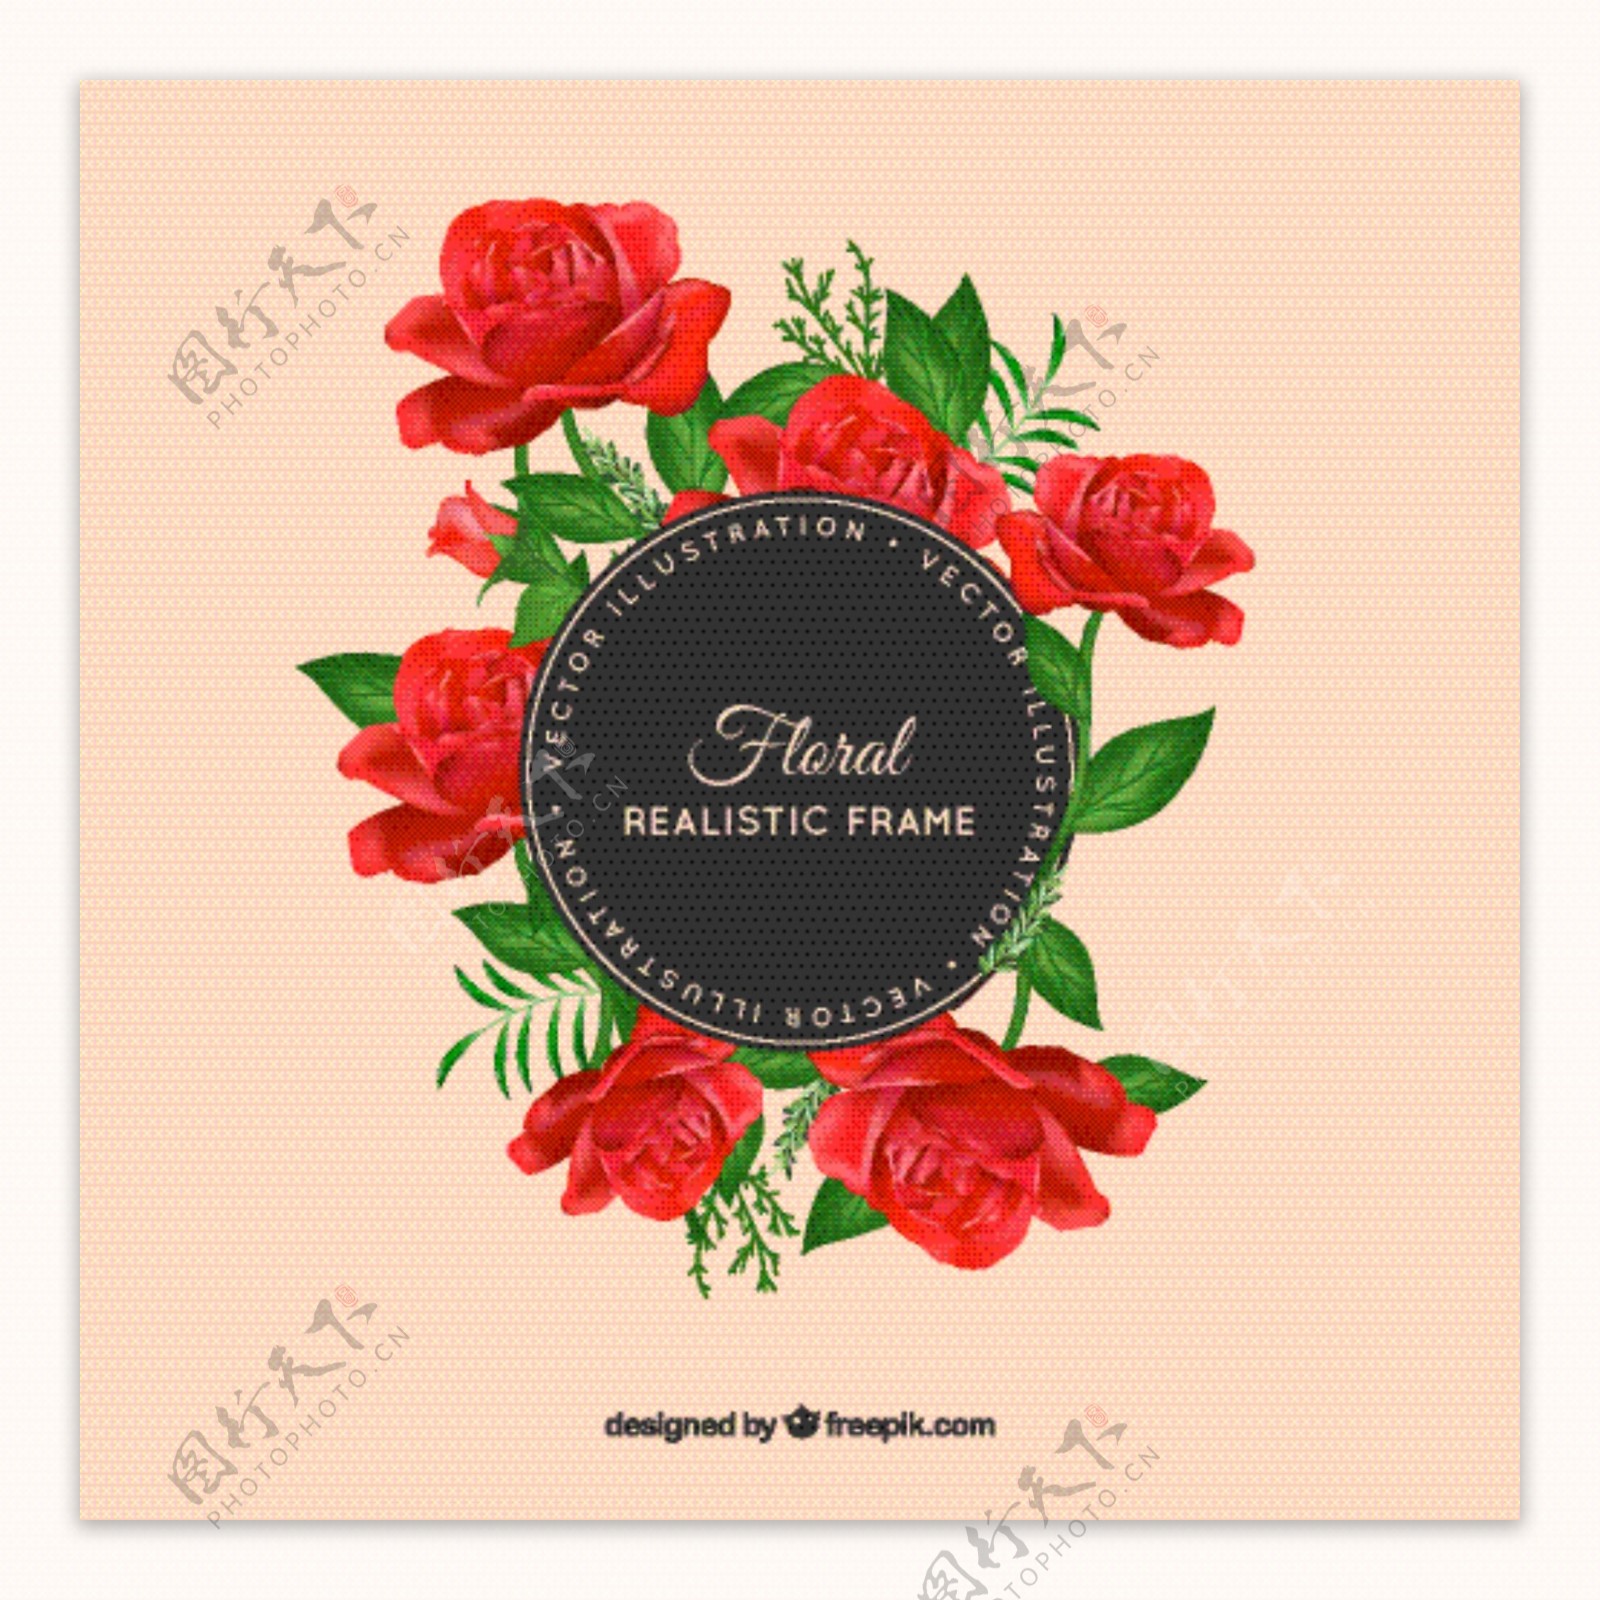 可爱的写实风格红玫瑰装饰花边